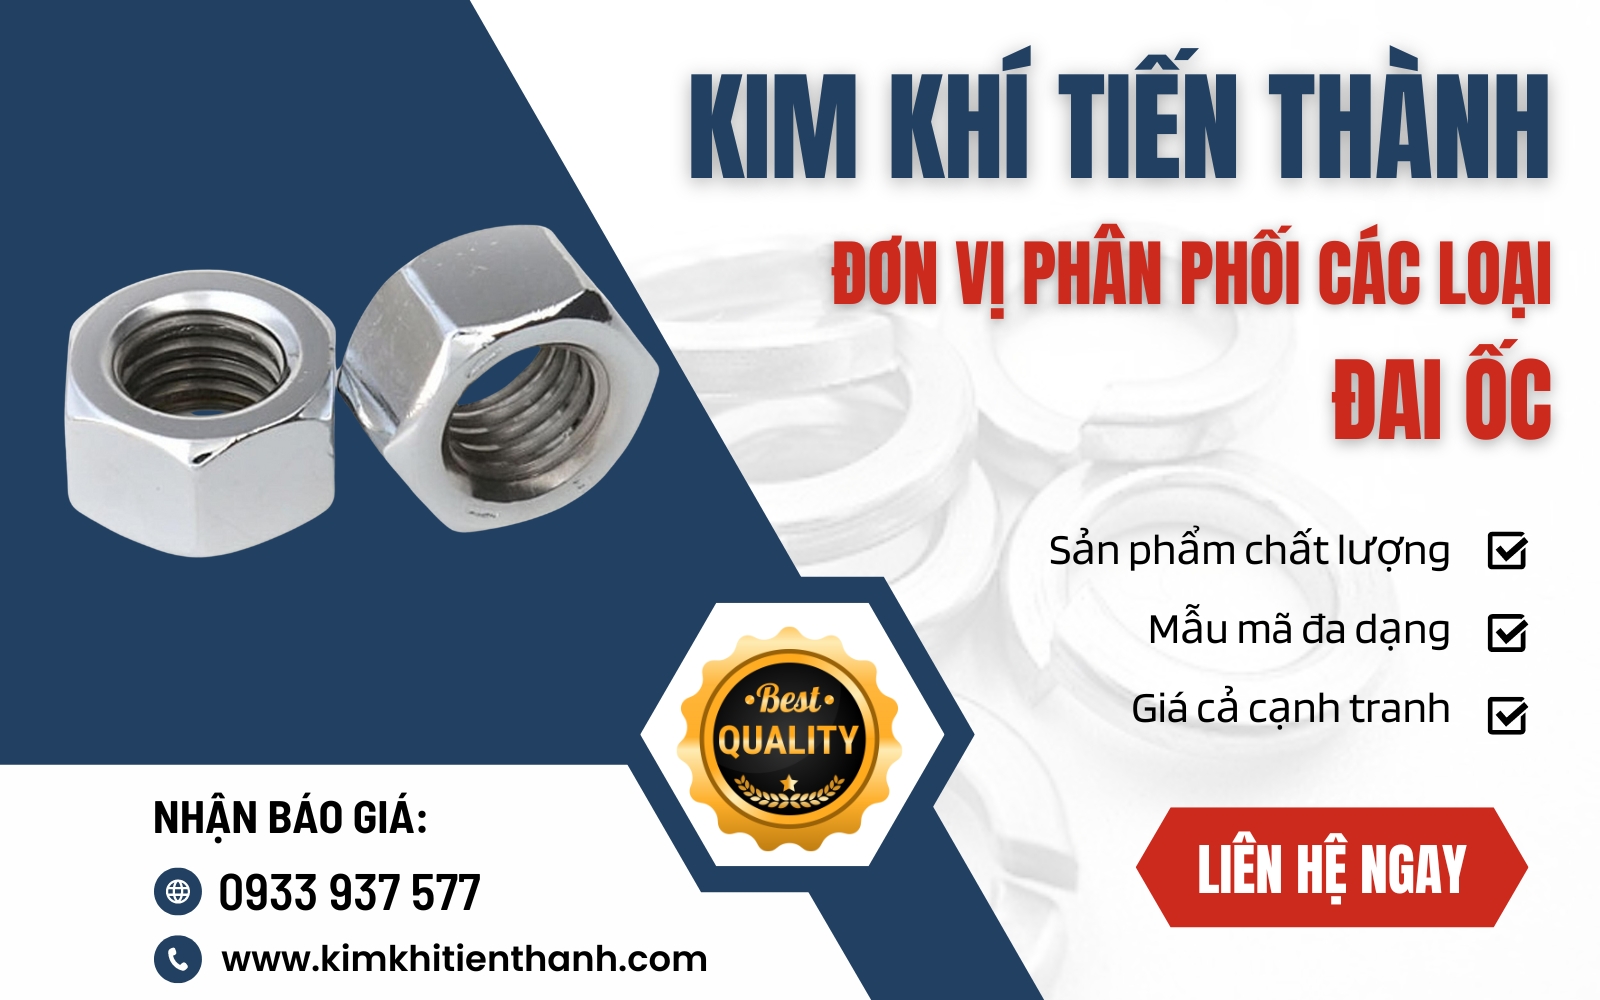 Kim Khí Tiến Thành cung cấp dịch vụ gia công đai ốc chất lượng hàng đầu Việt Nam